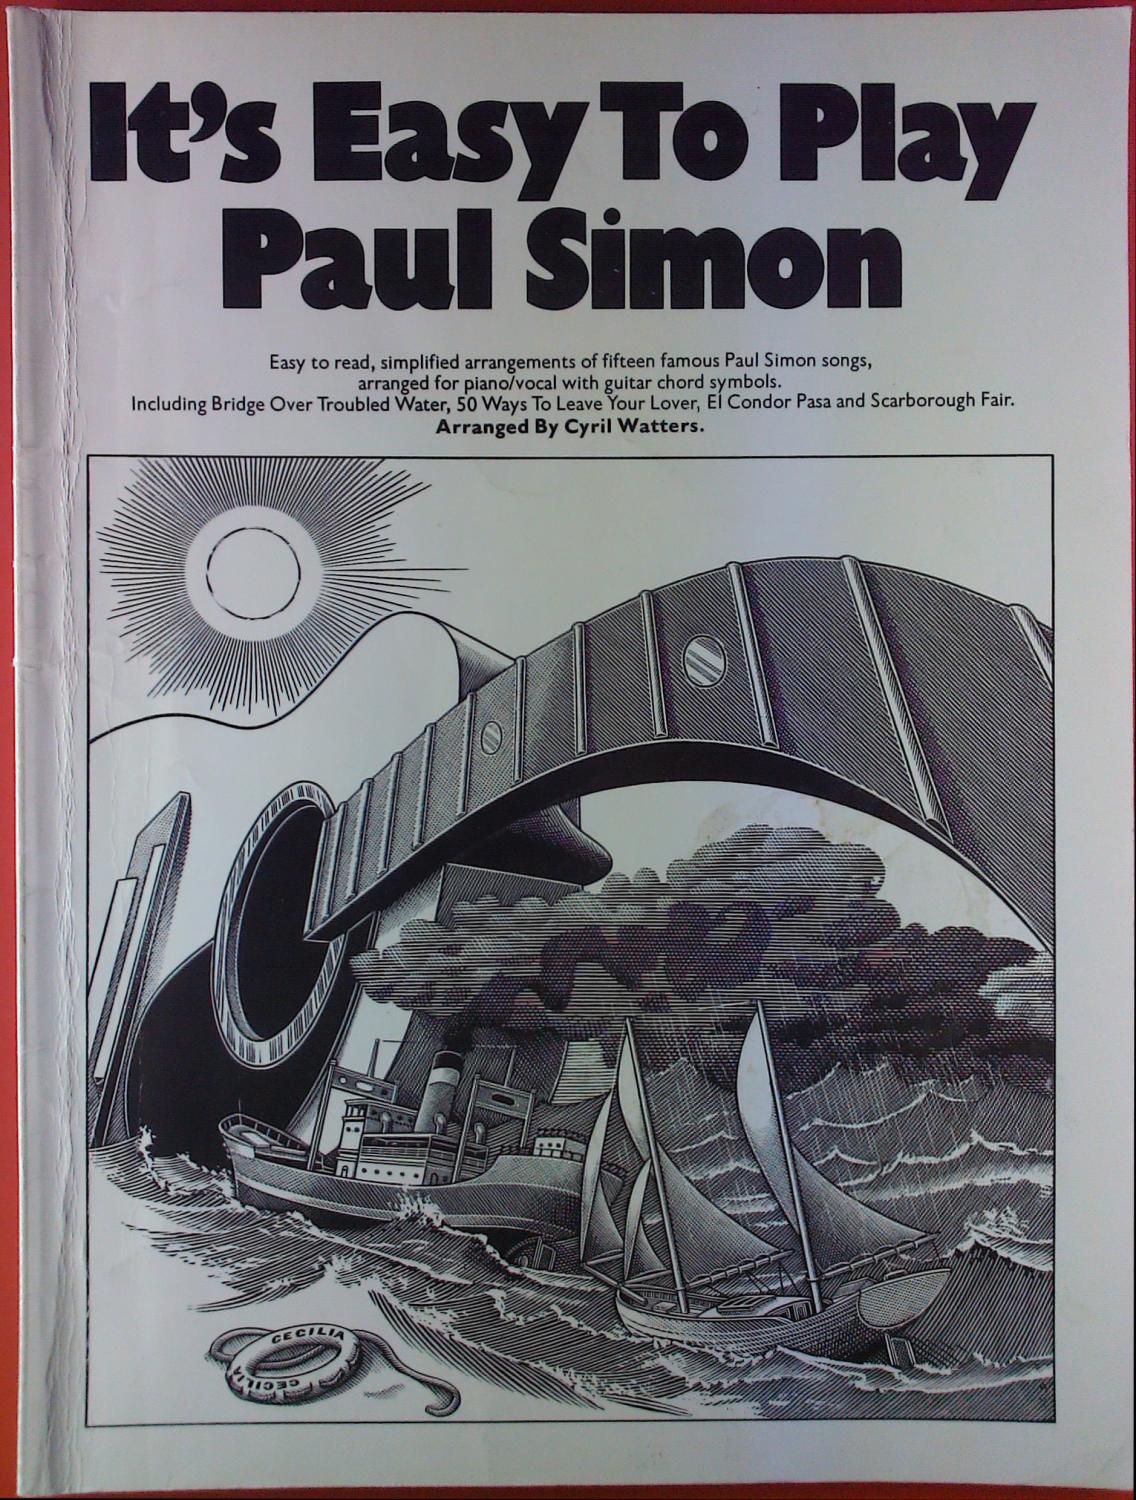 Its easy to play Paul Simon - ohne Autorenangabe